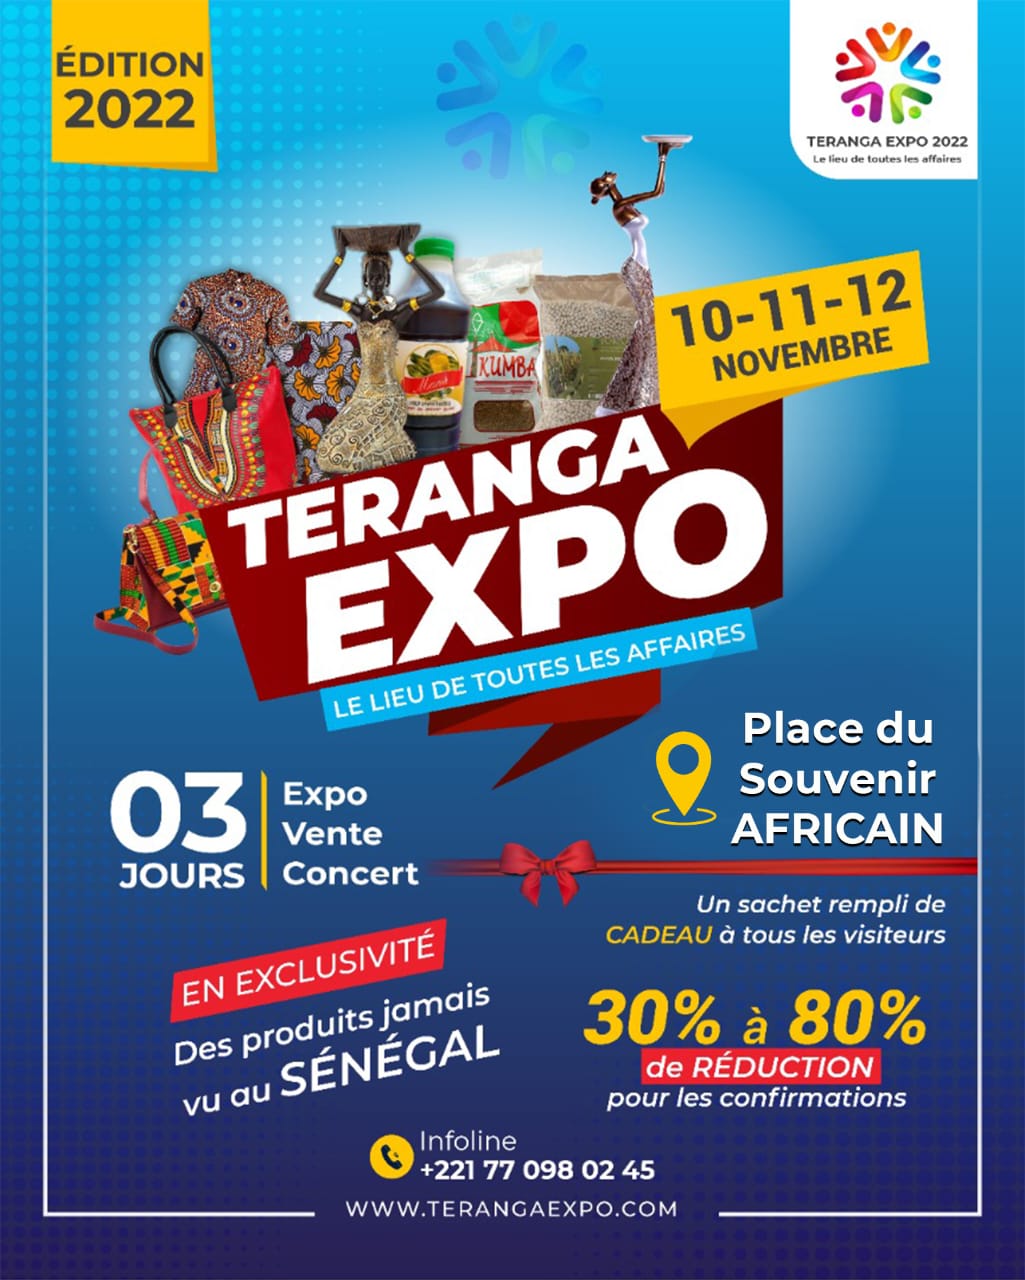 Teranga Expo 2022 